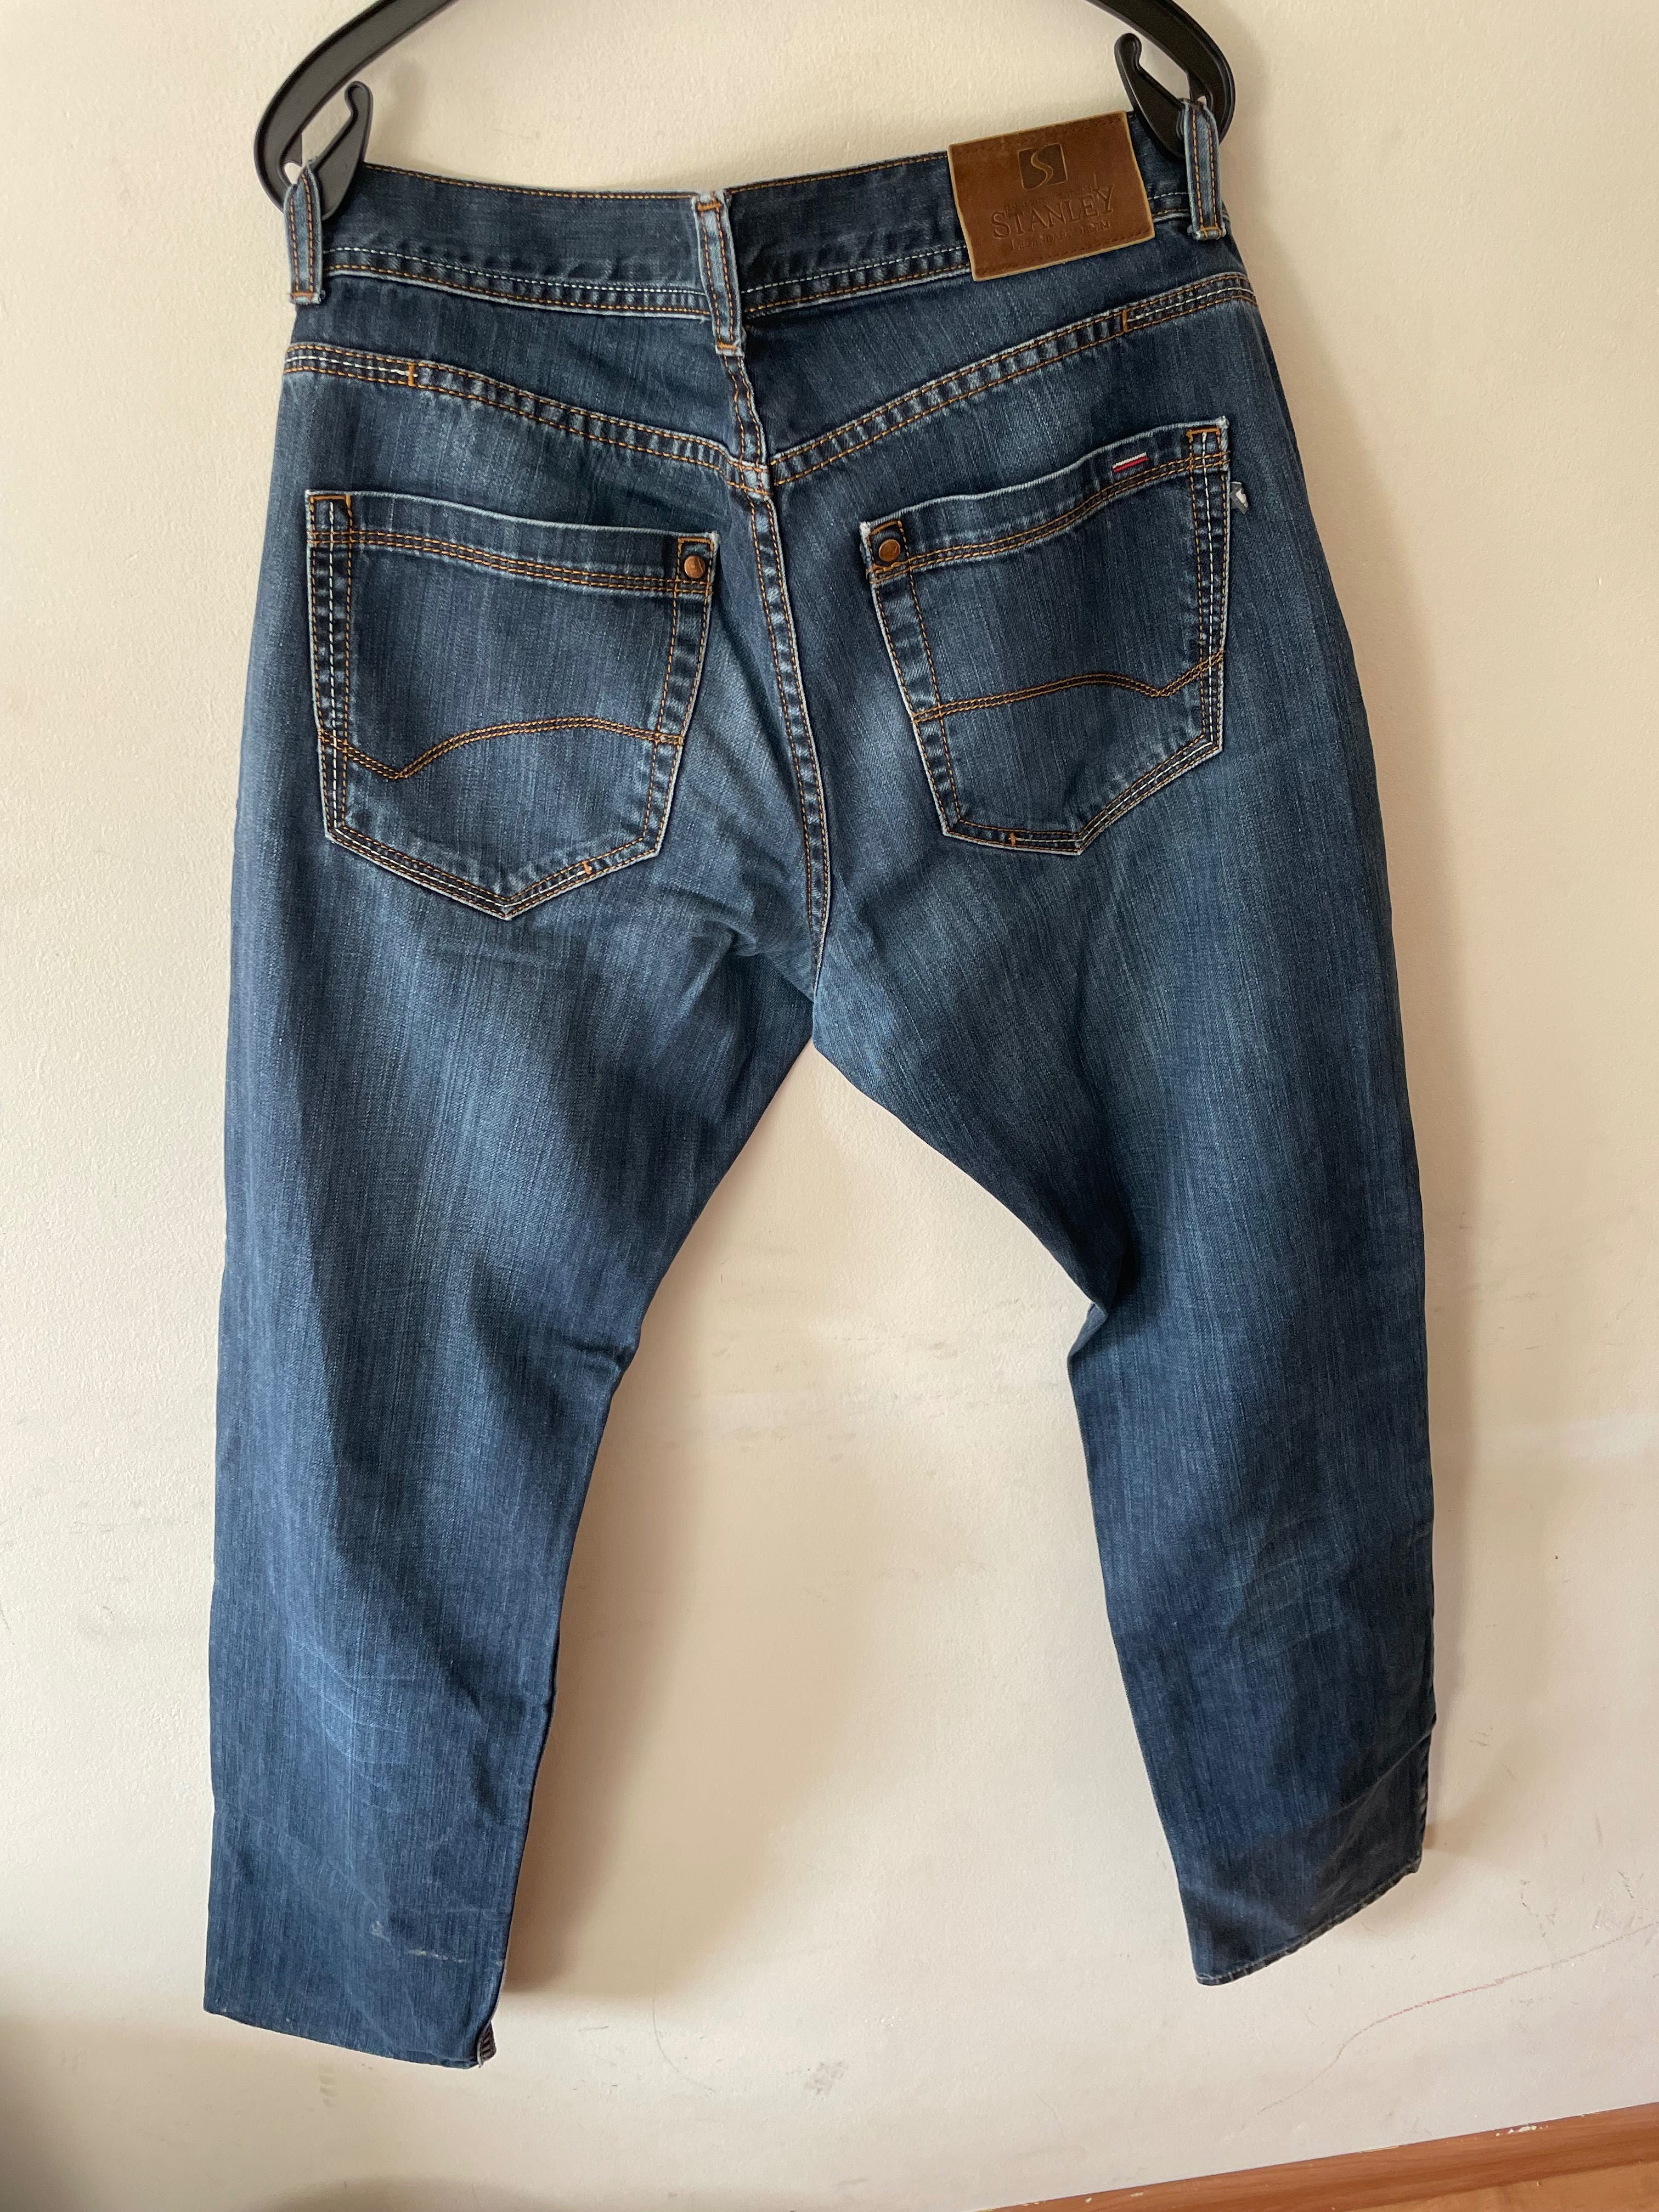 Spodnie jeansowe męskie Stanley, Rozmiar L (34)